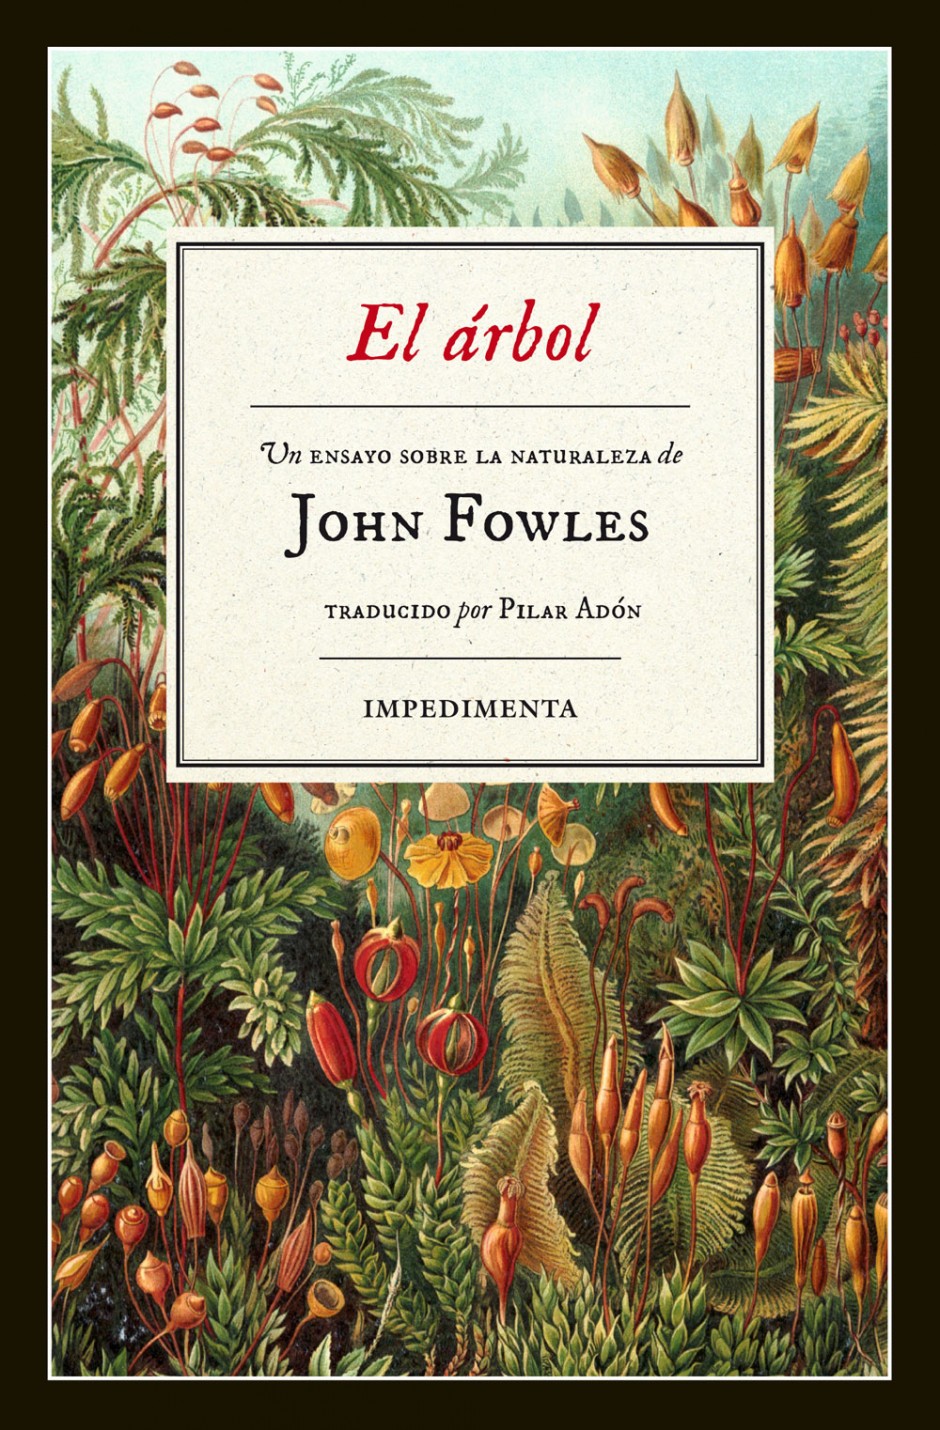 John Fowles: caos verde